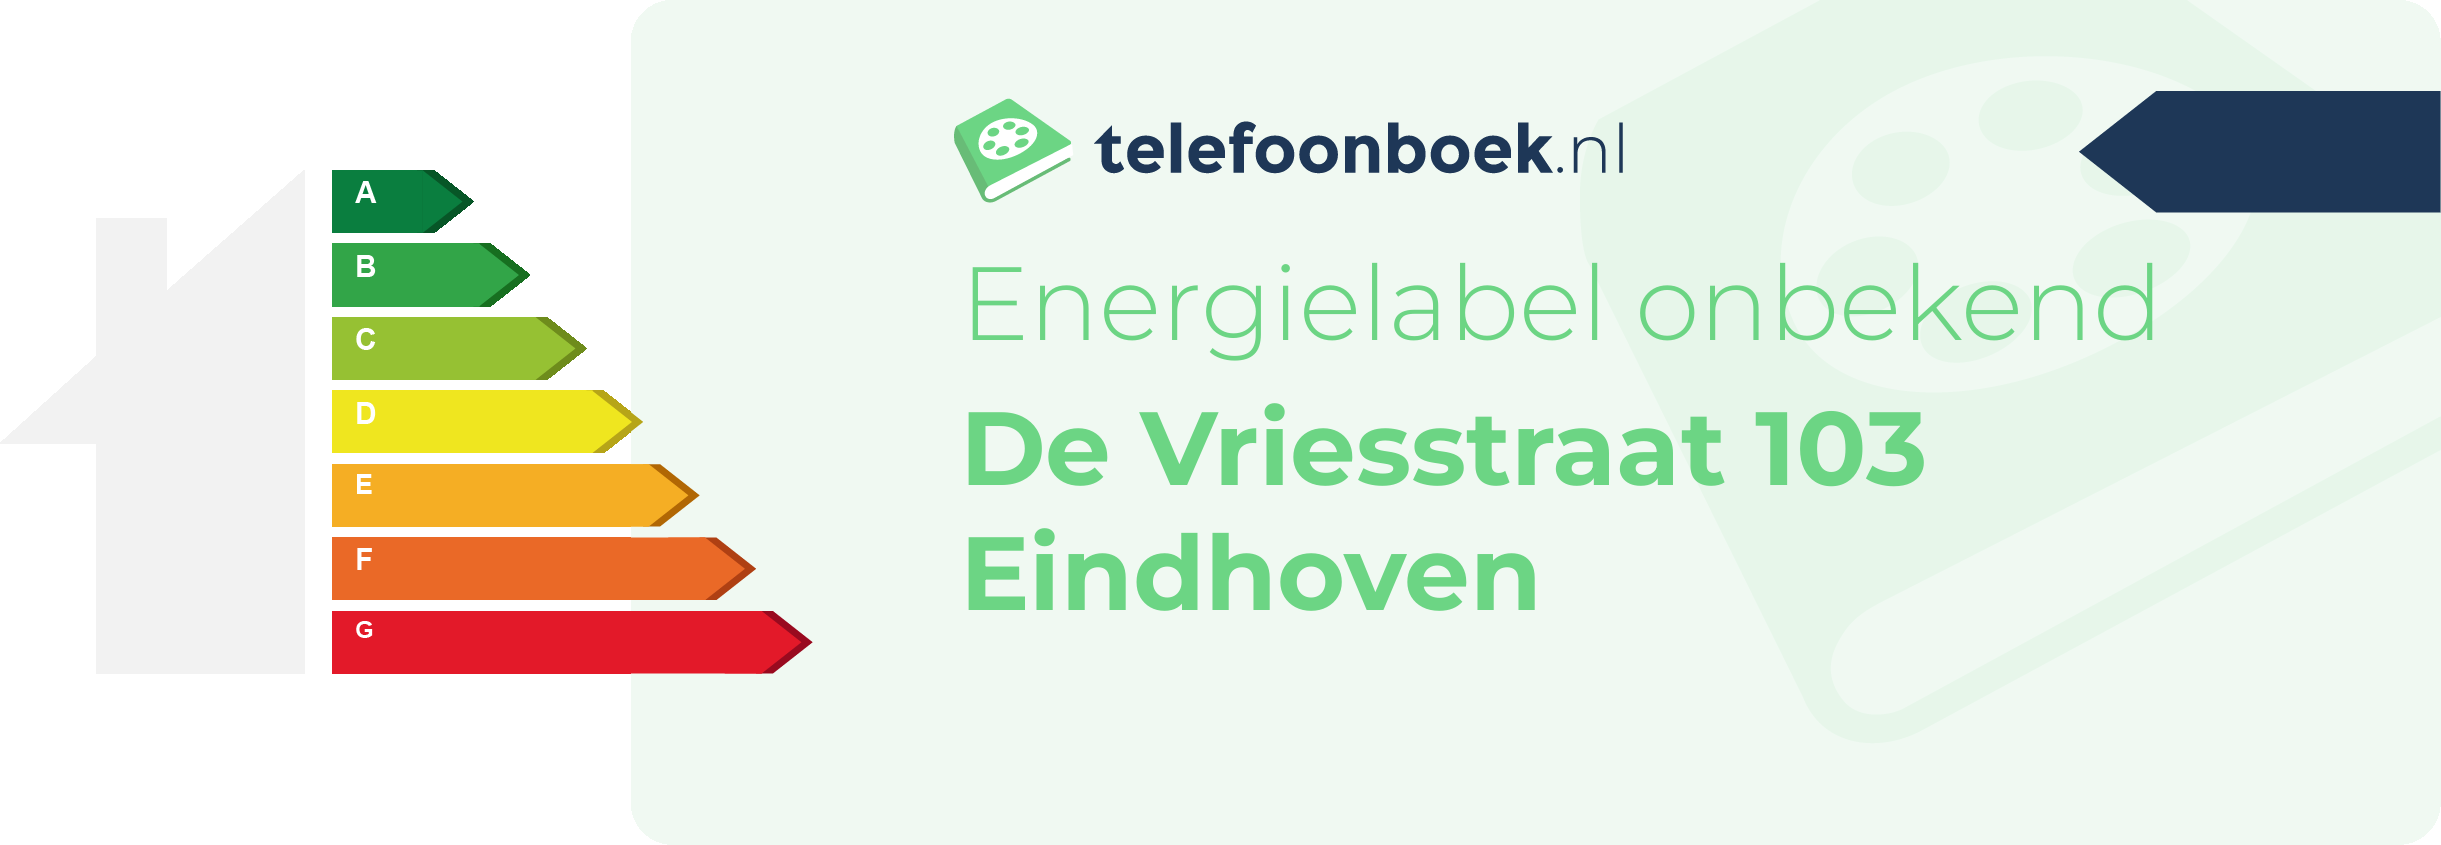 Energielabel De Vriesstraat 103 Eindhoven